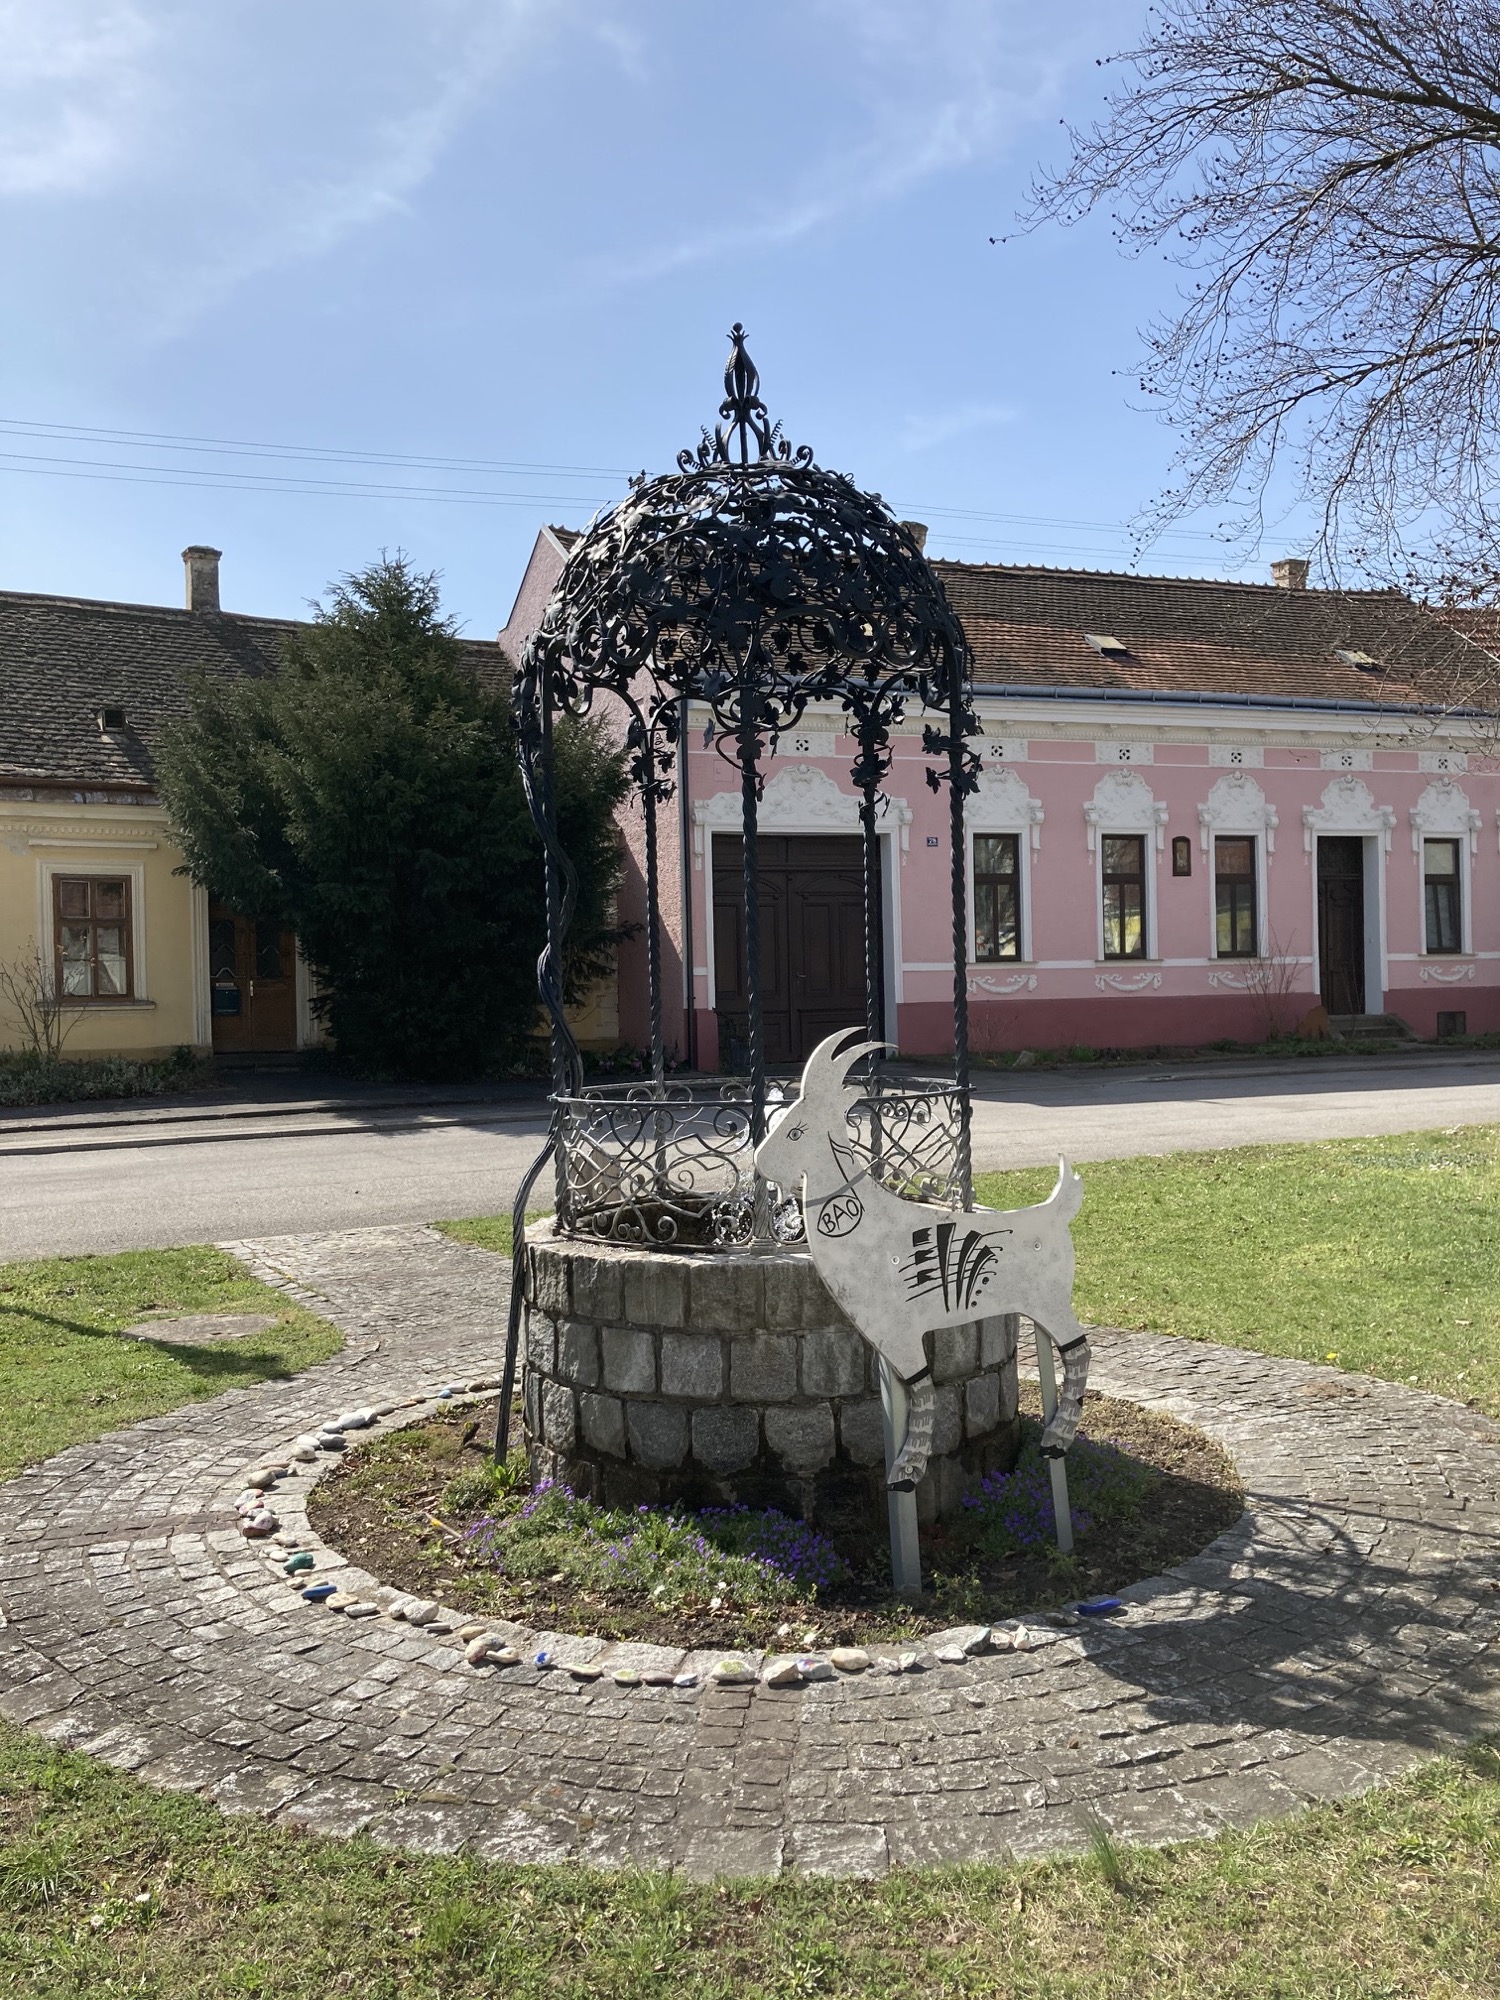 Brunnen im Zentrum von Bockfließ, mit dekorativem Blattdach aus Metall und davor einer Darstellung eines Bocks